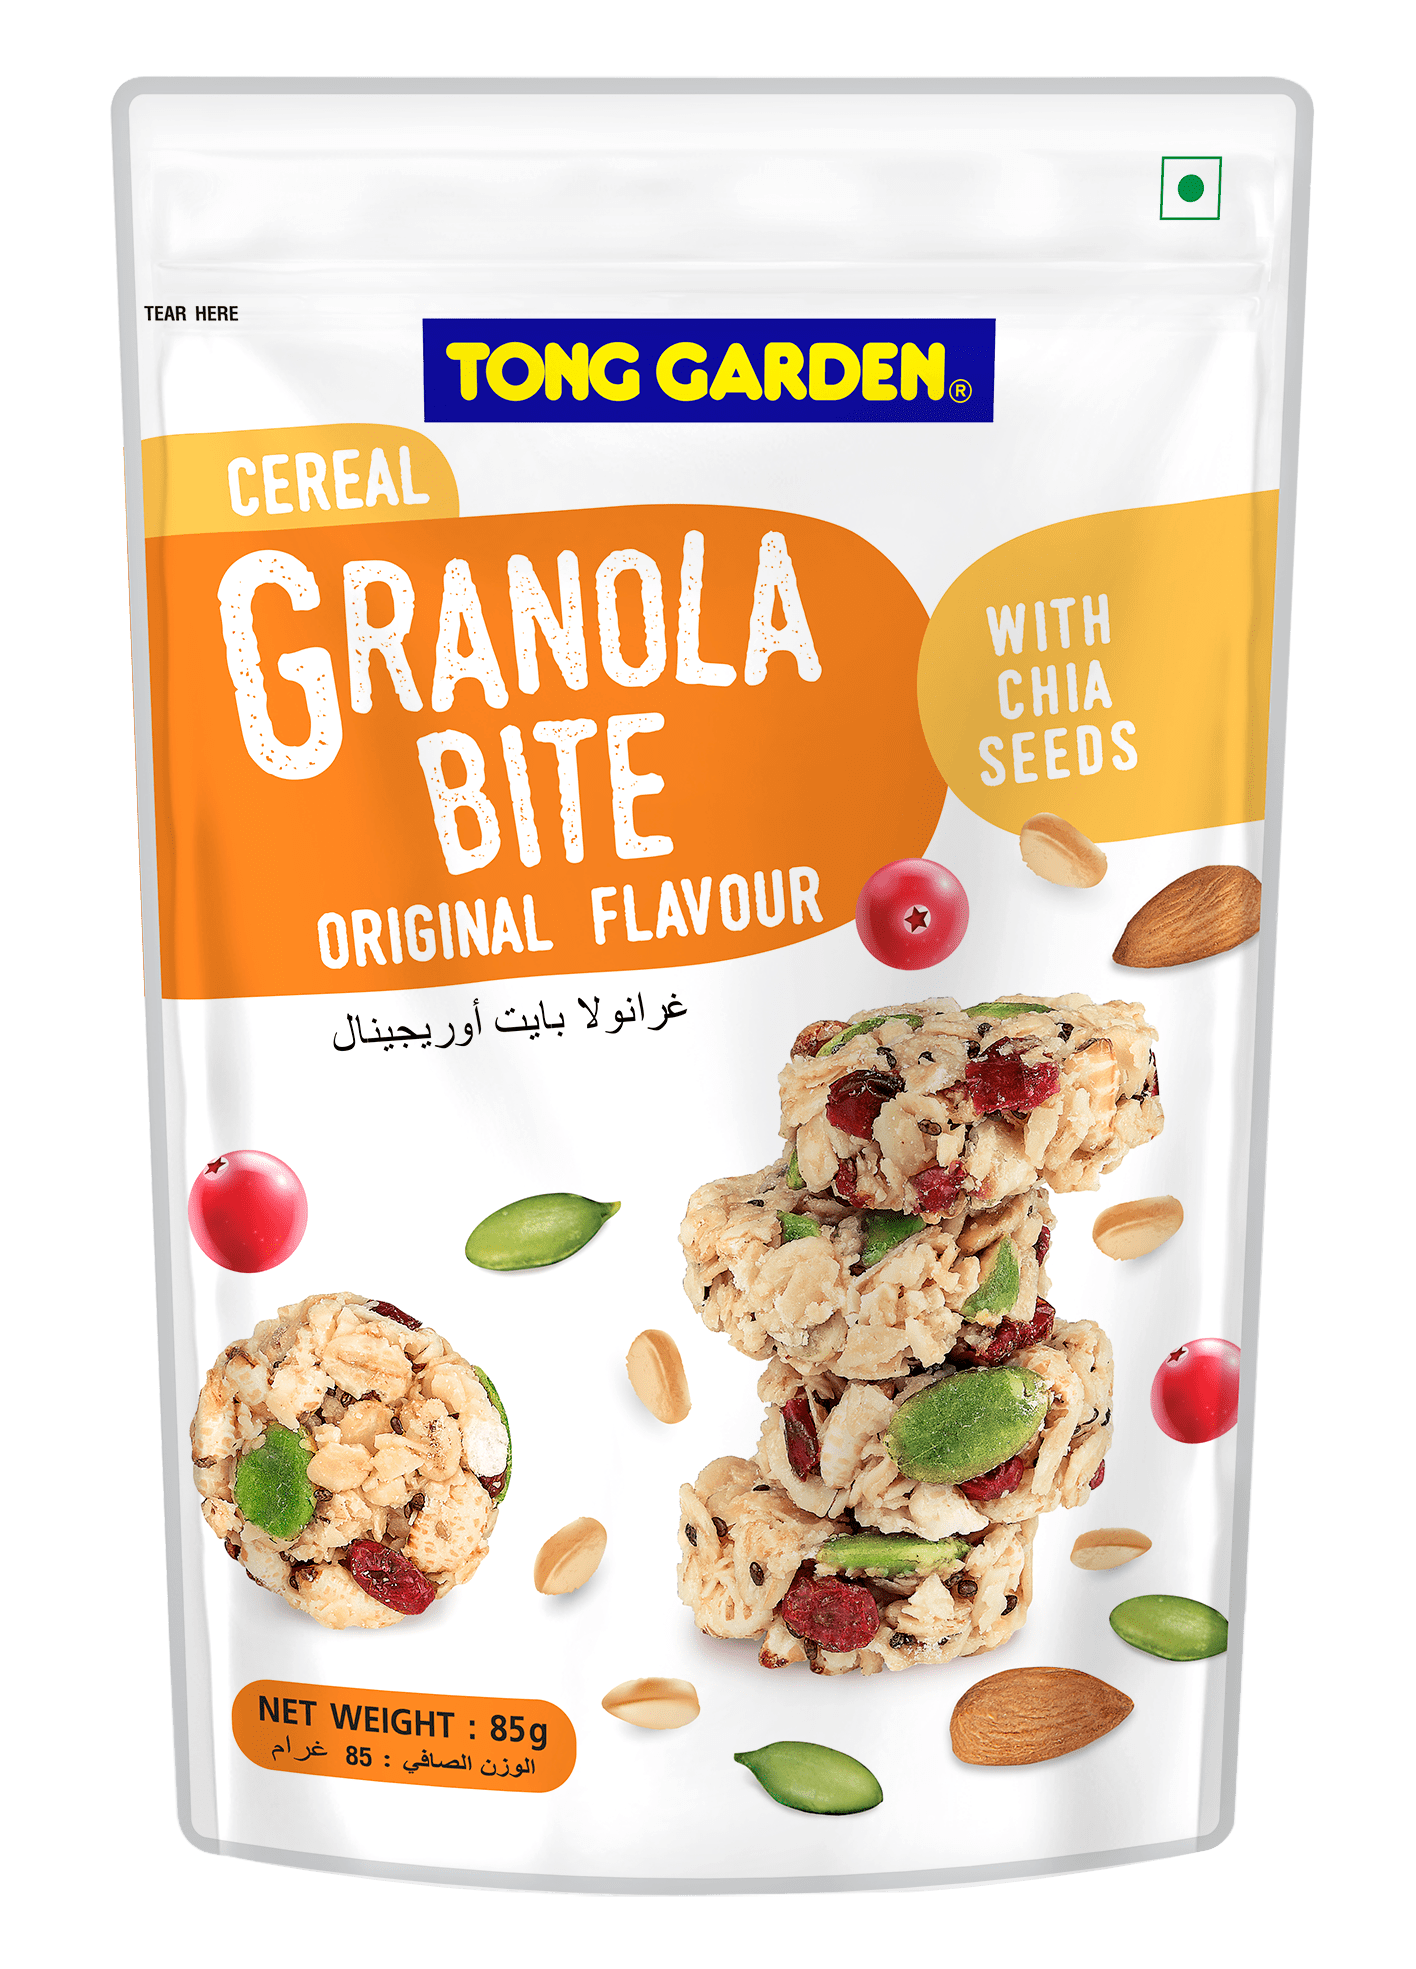 Tong Garden Cereal Granola Bite Original 85g